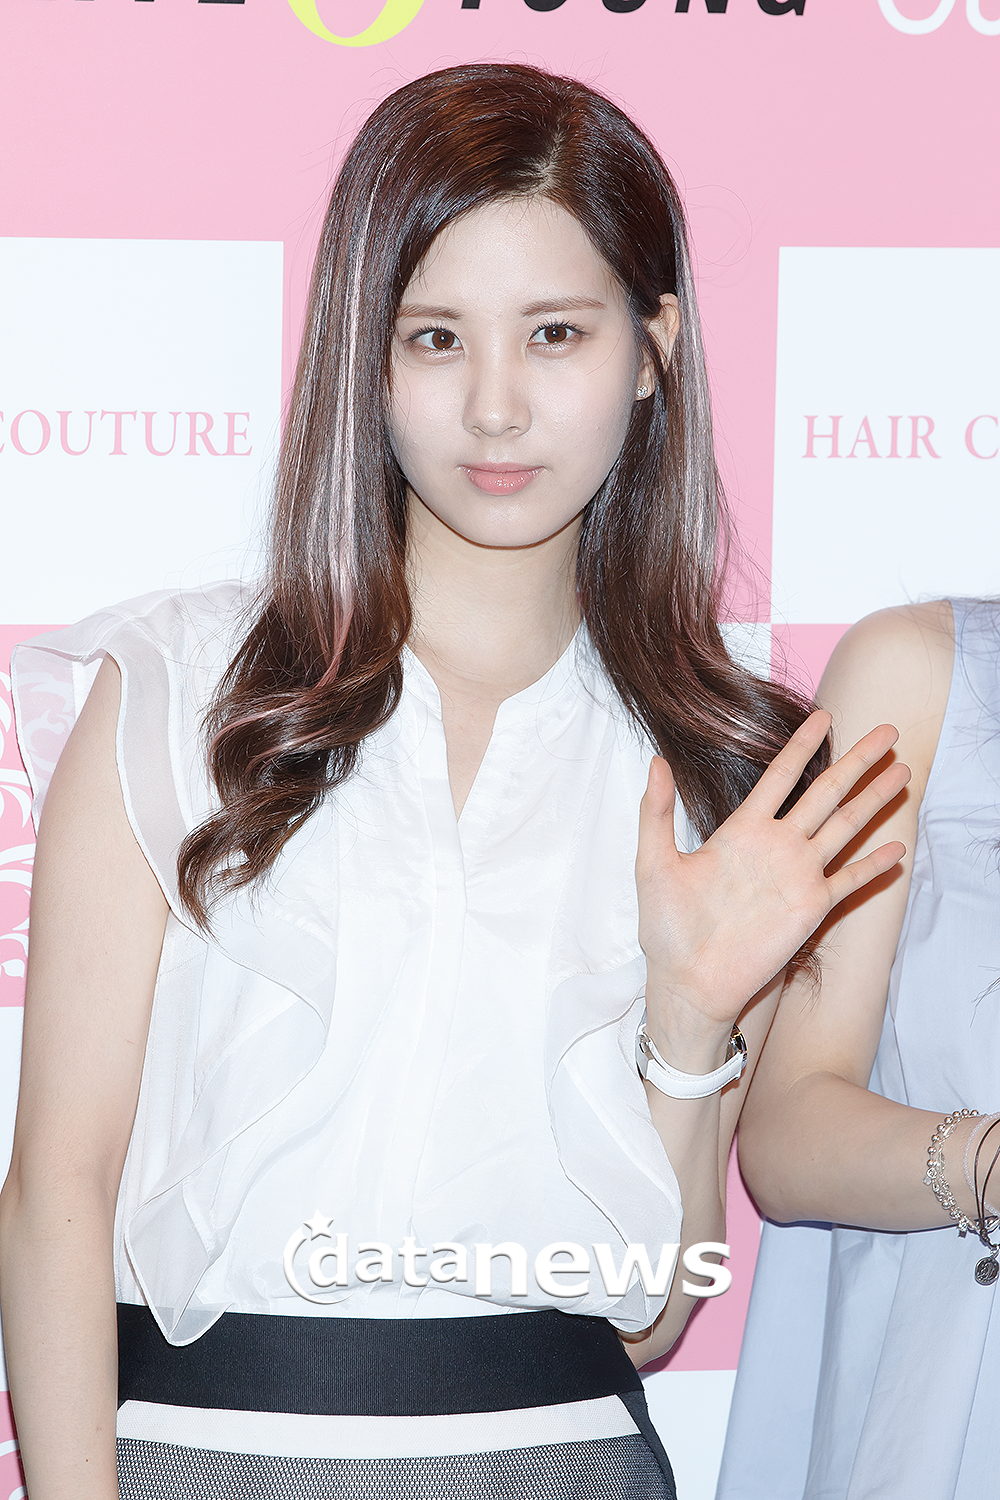 [PIC][26-07-2013]Tiffany - TaeYoen - SeoHyun và HyoYeon xuất hiện tại buổi fansign cho "Hair Couture" vào chiều nay 2260F73D51F66FFA326639